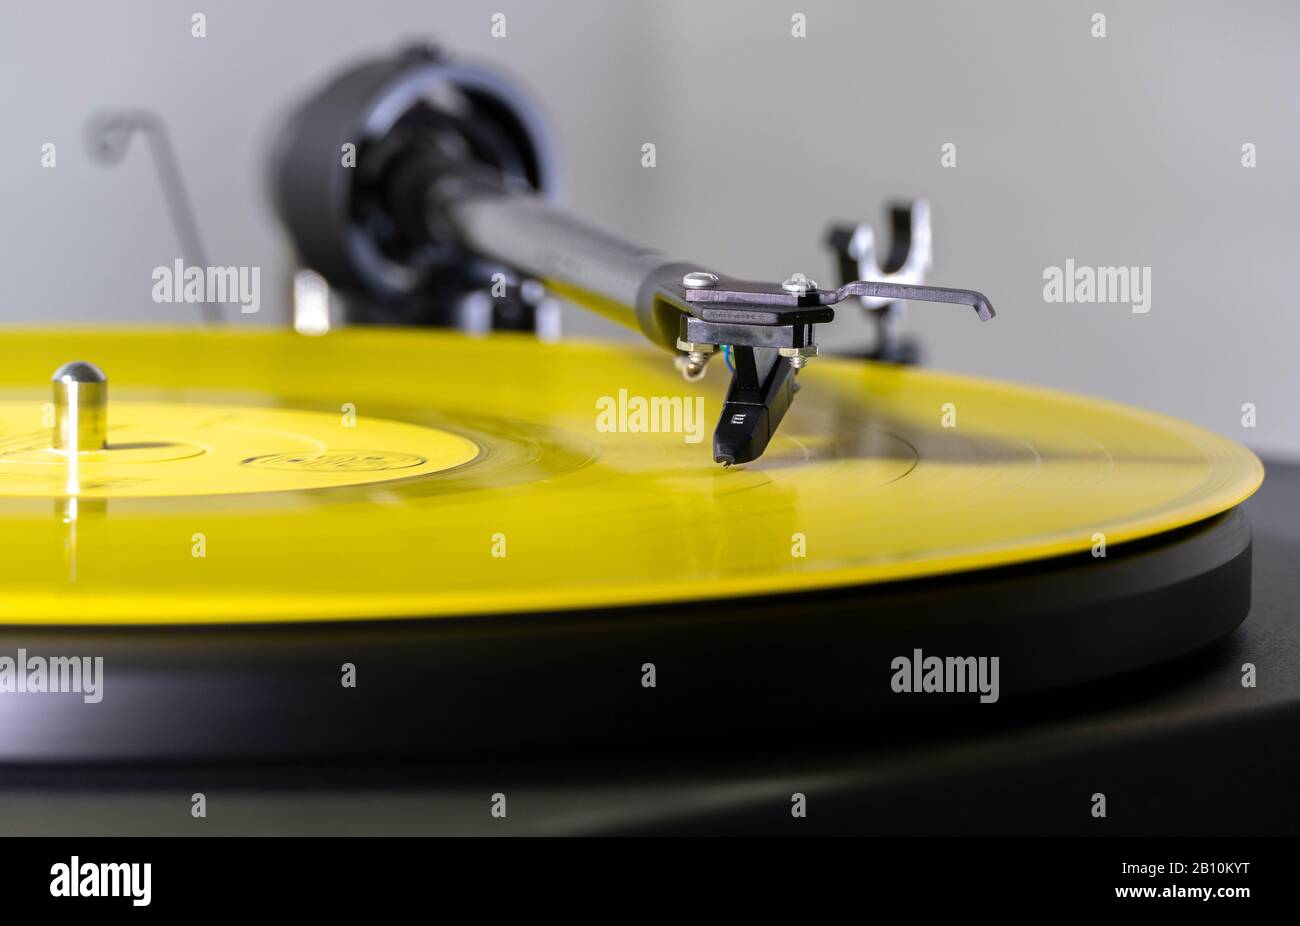 Die Nadel/der Stift auf den Rillen einer gelben Vinyl-LP-Schallplatte, auf einem drehenden Plattenspieler, der einen Musikalbum-Track wiedergibt. Stockfoto